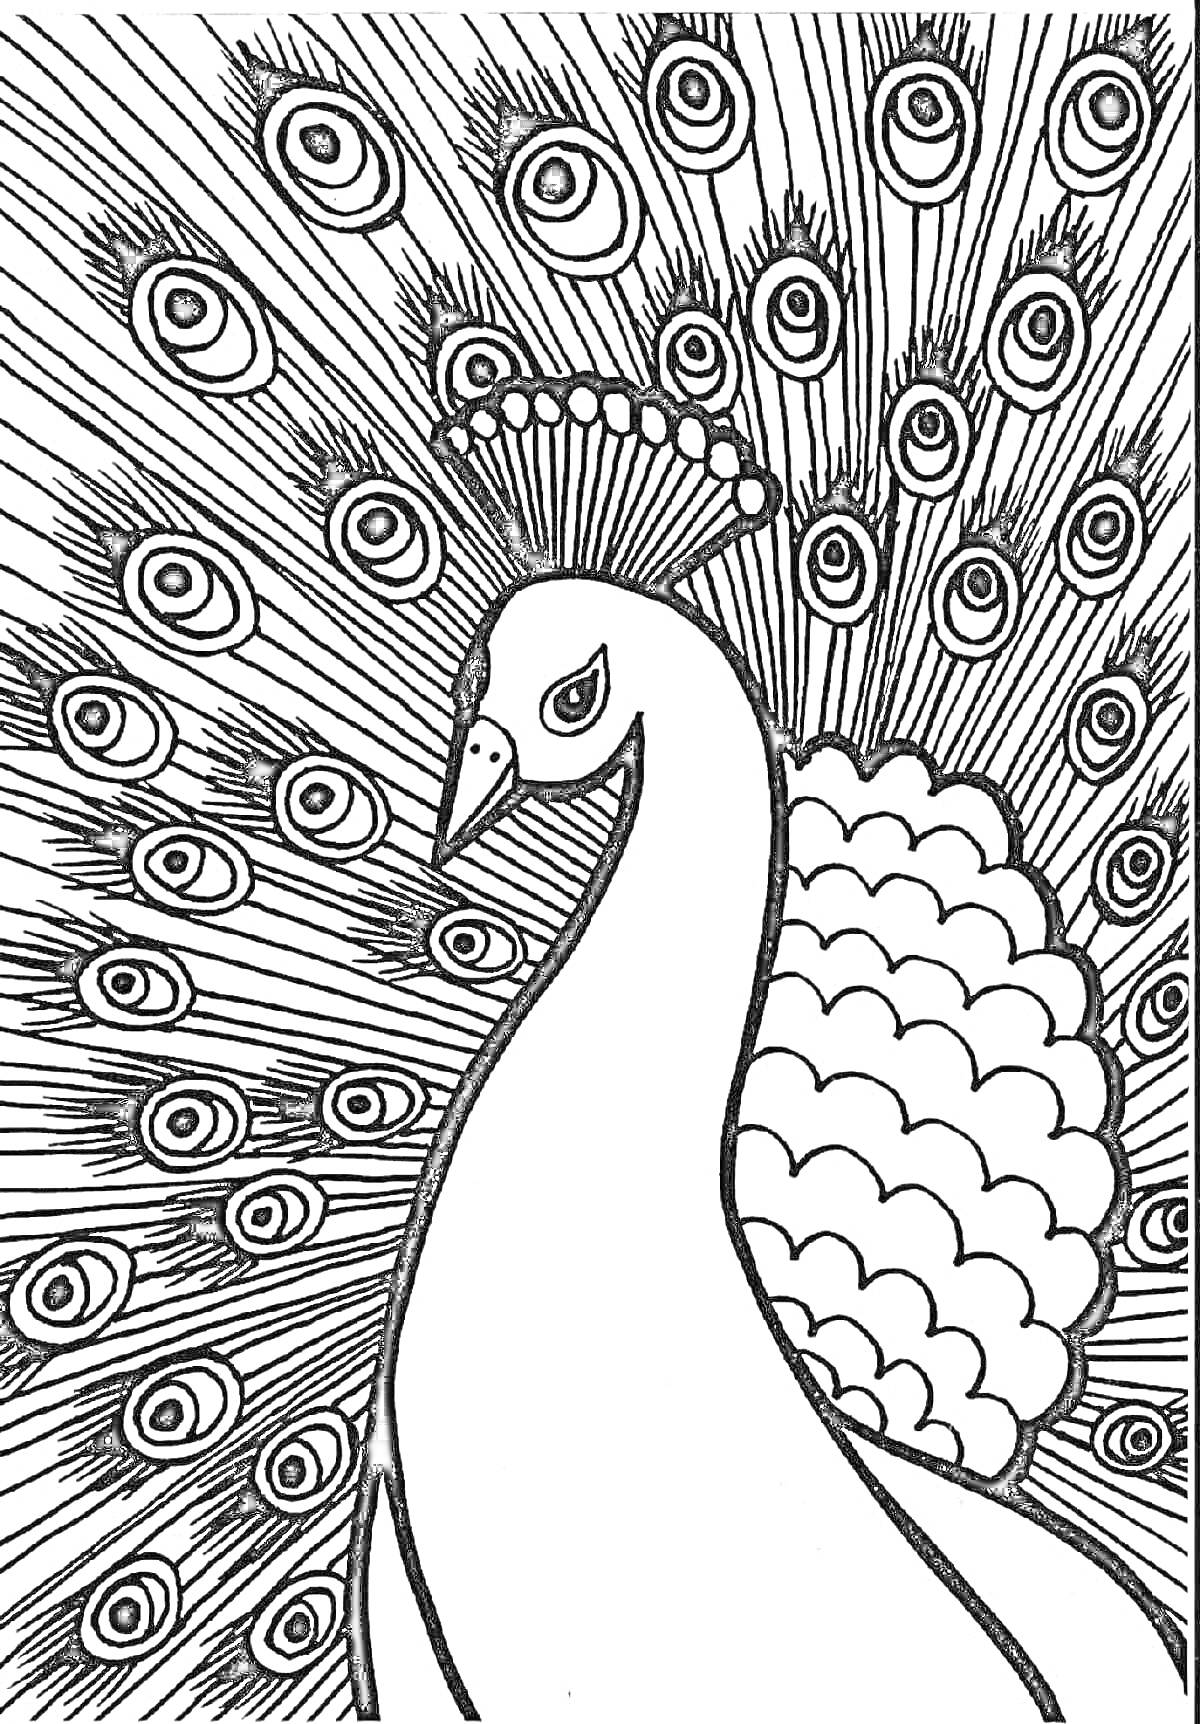 Раскраска Раскраска с павлином, крупный павлин с распущенным хвостом, украшенным глазчатыми перьями